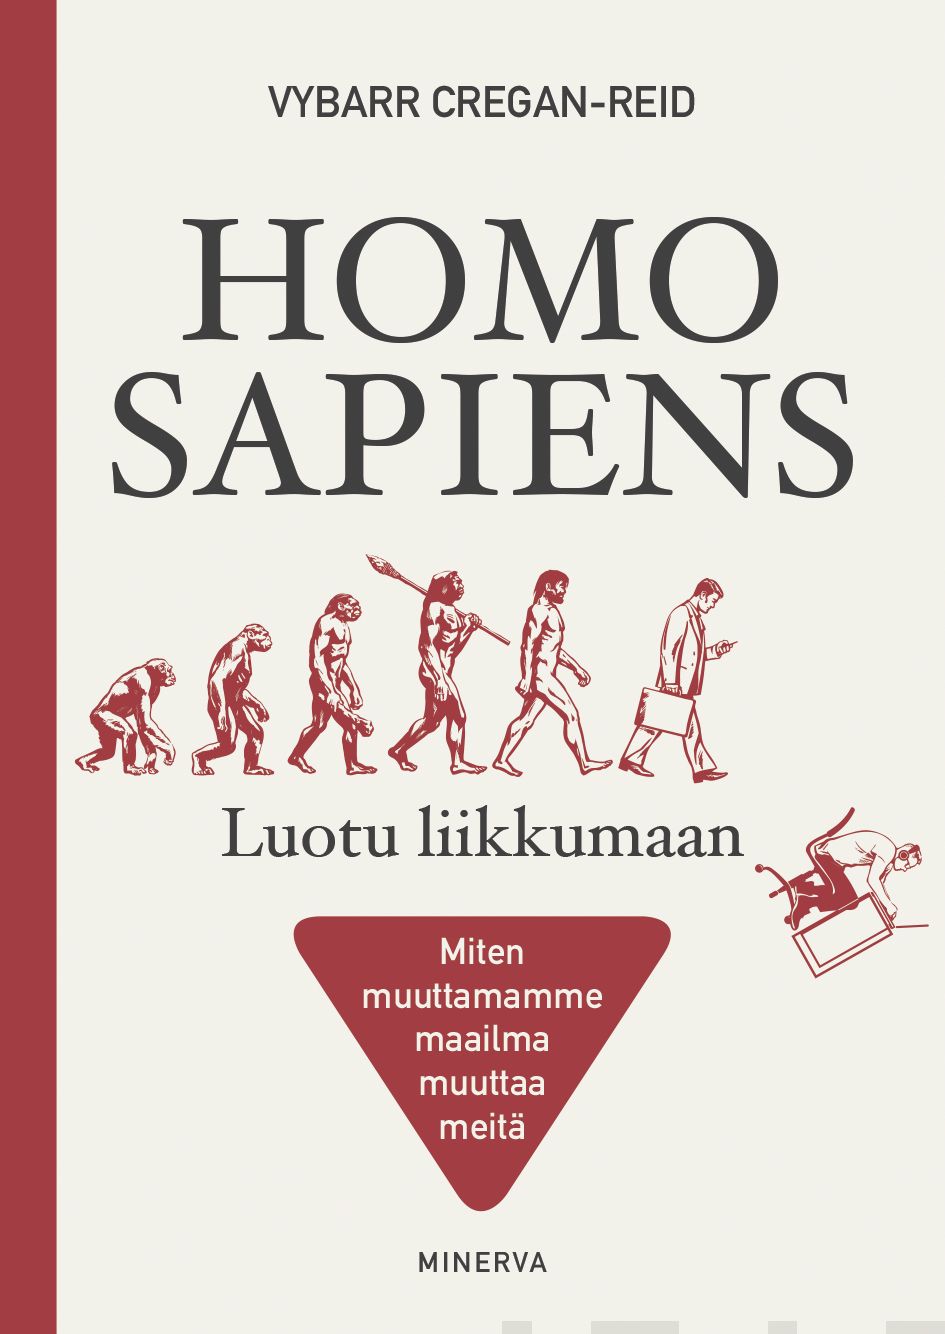 Cregan-Reid, Vybarr - Homo Sapiens - Luotu liikkumaan: Miten muuttamamme maailma muuttaa meitä, e-kirja